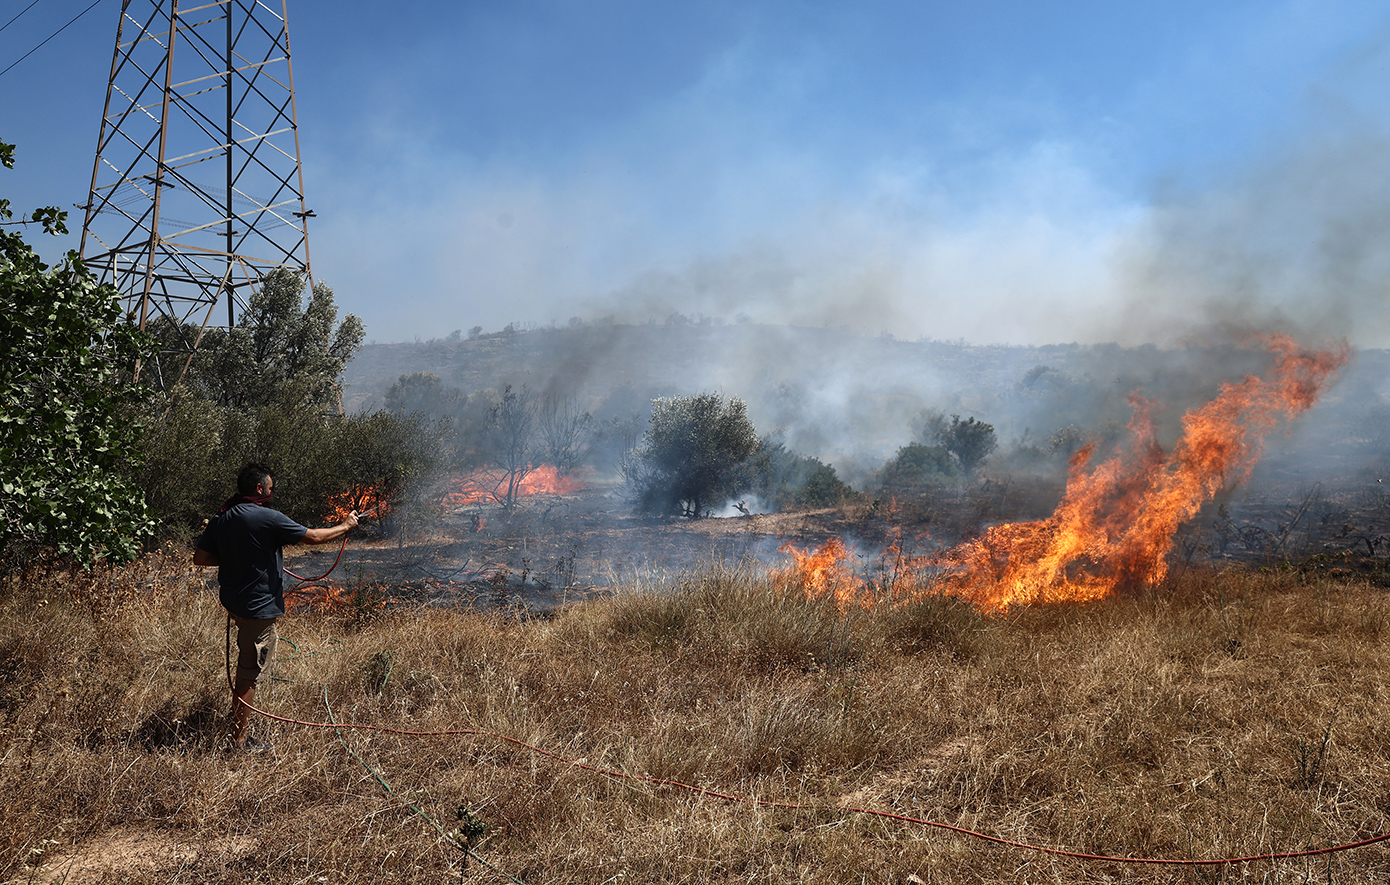 Σε 24 ώρες ξέσπασαν 34 δασικές πυρκαγιές, σύμφωνα με την ενημέρωση της Πυροσβεστικής